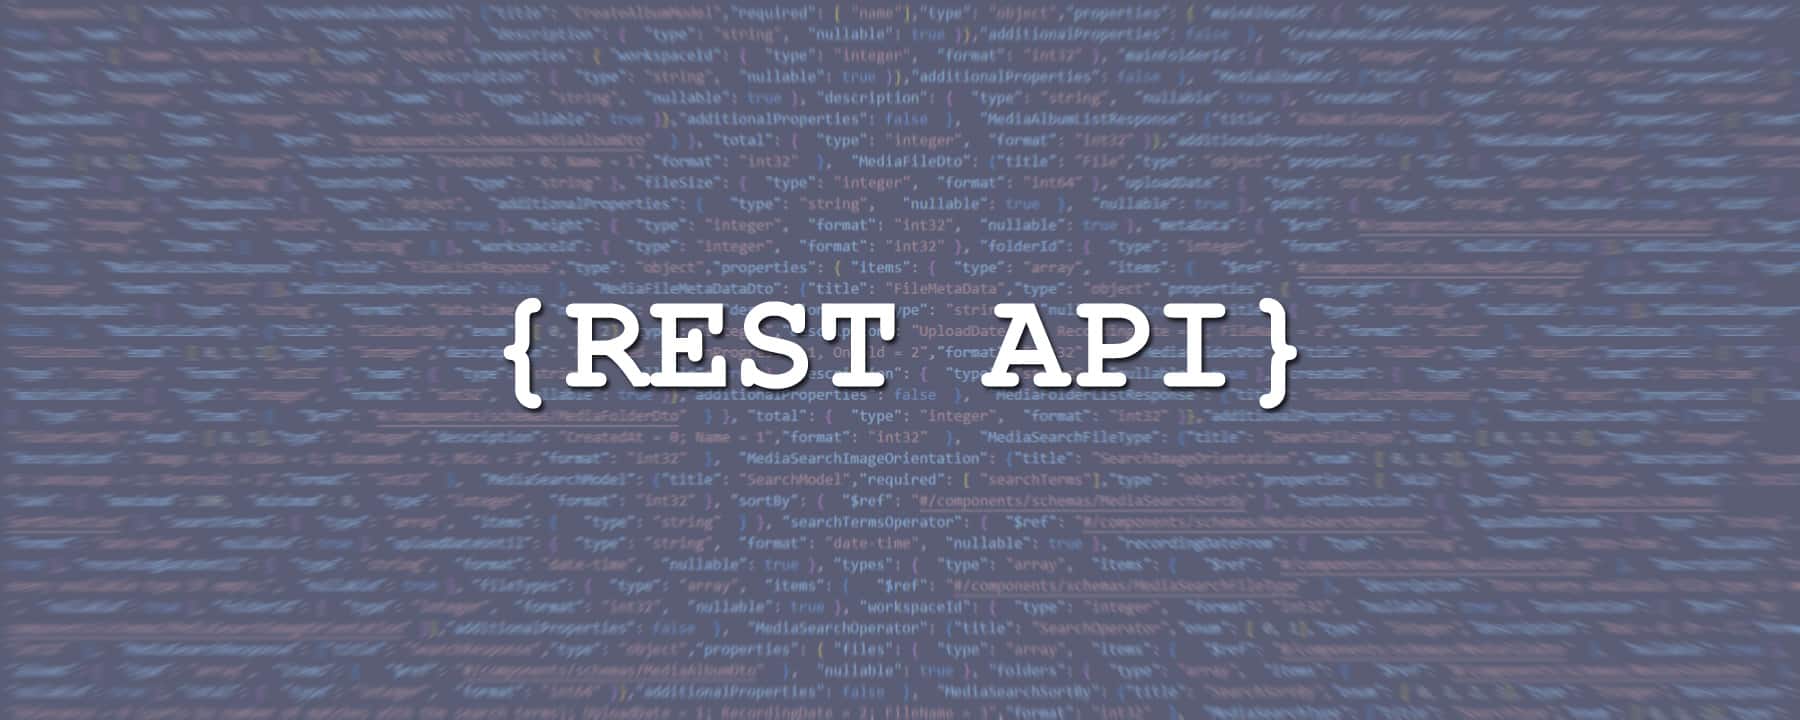 Header-Bild: Schriftzug REST-API vor Hintergrund mit Quellcode